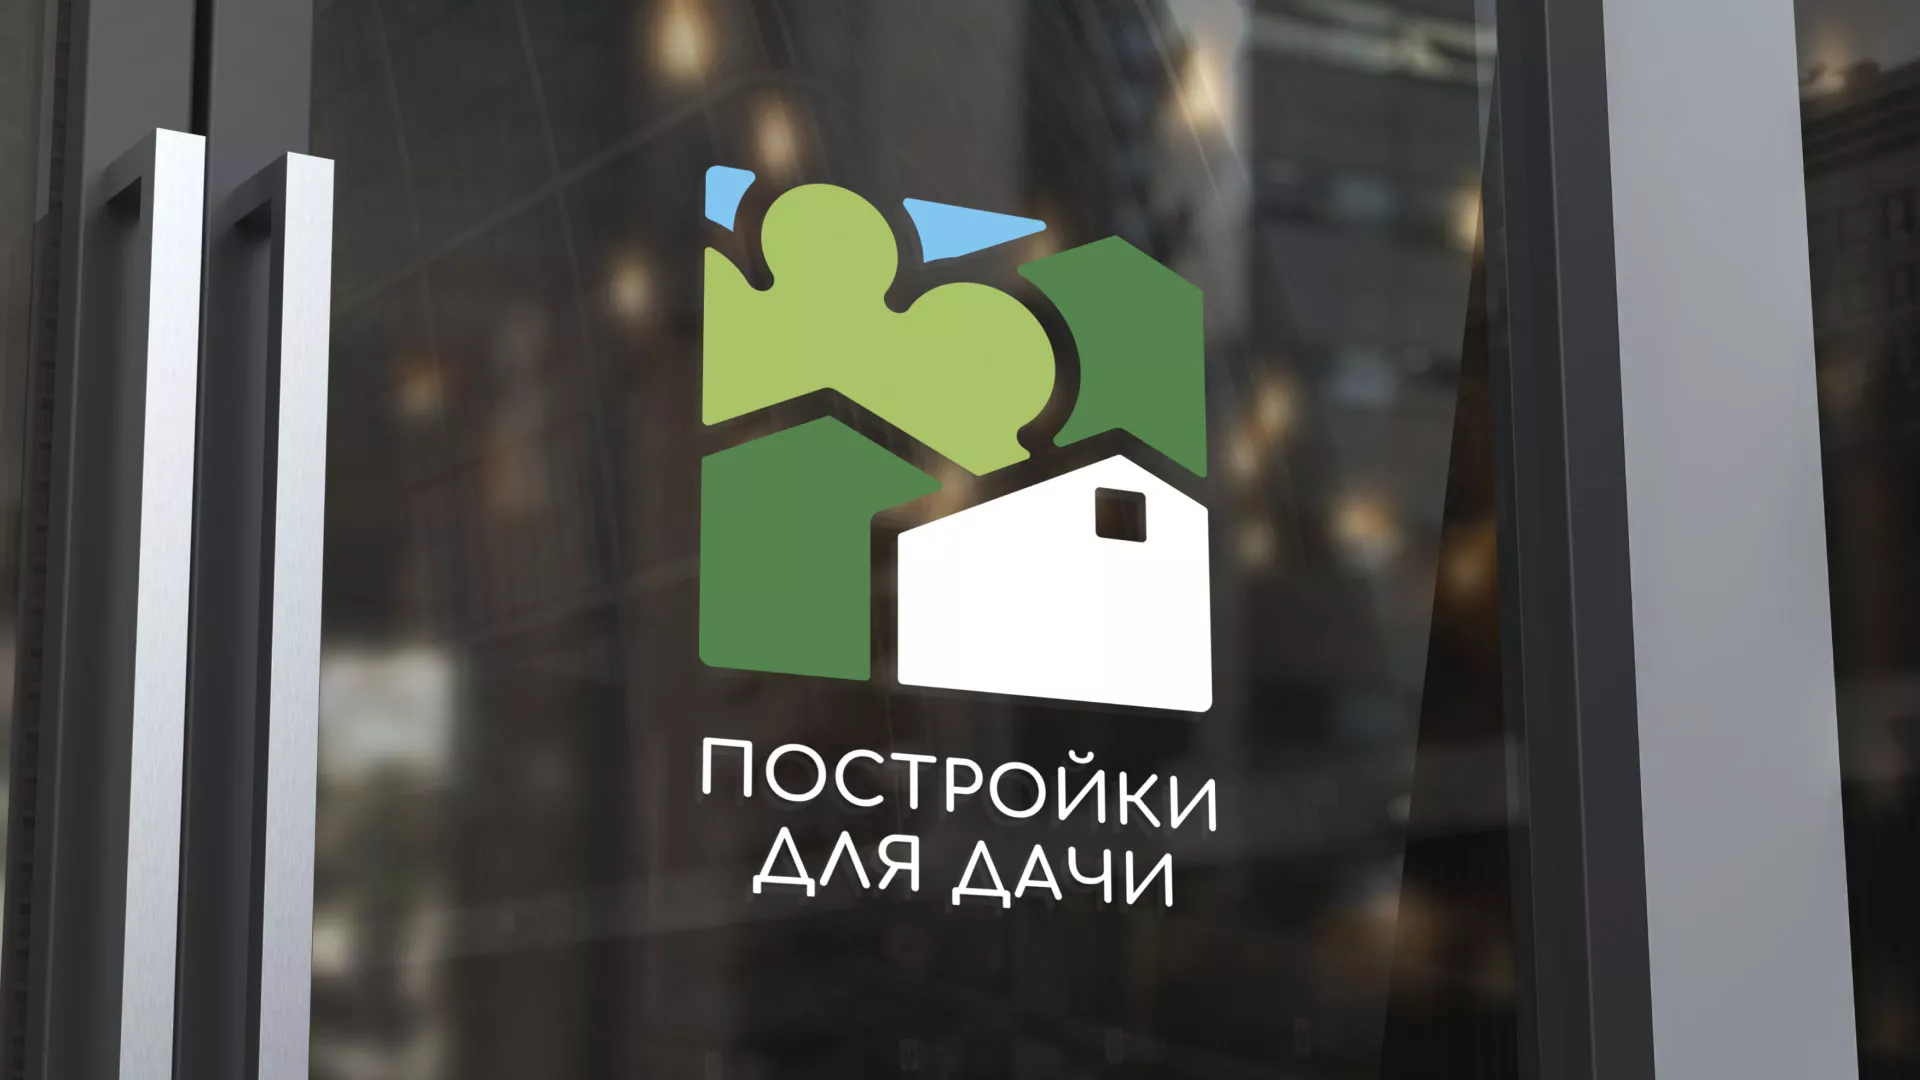 Разработка логотипа в Малоархангельске для компании «Постройки для дачи»